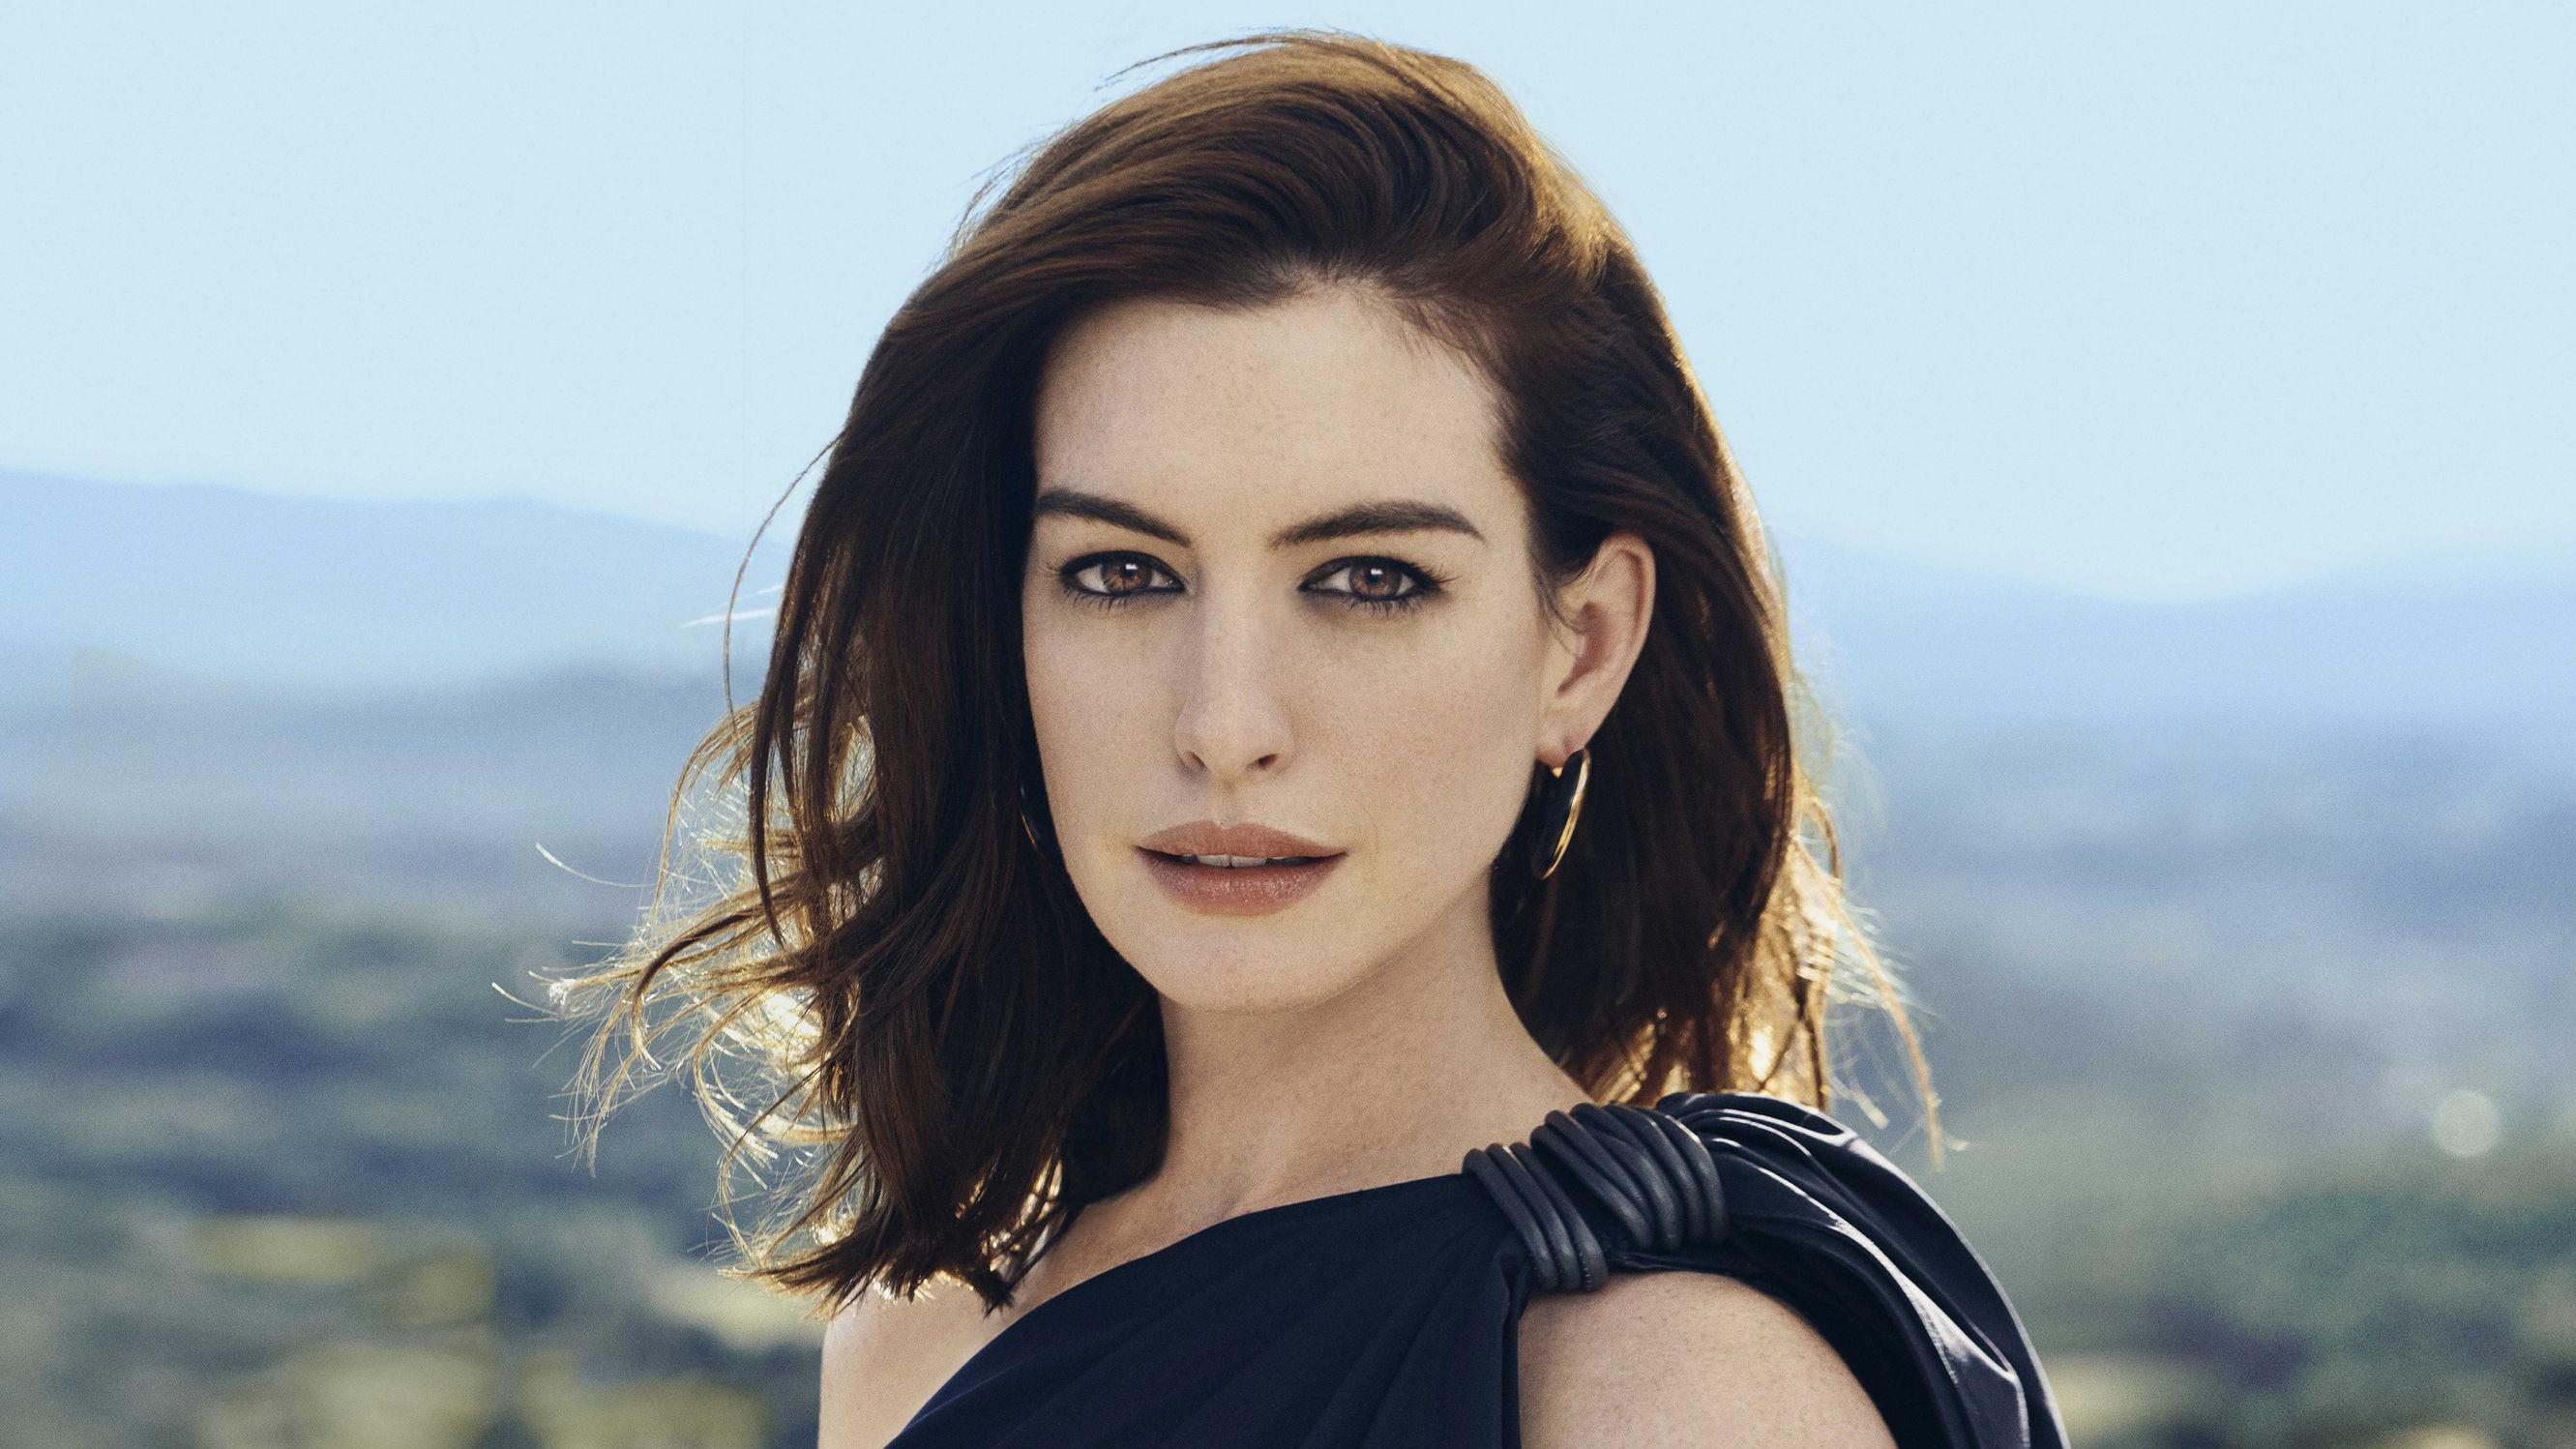 Anne Hathaway HD Celebrities, 4k Wallpaper, Image